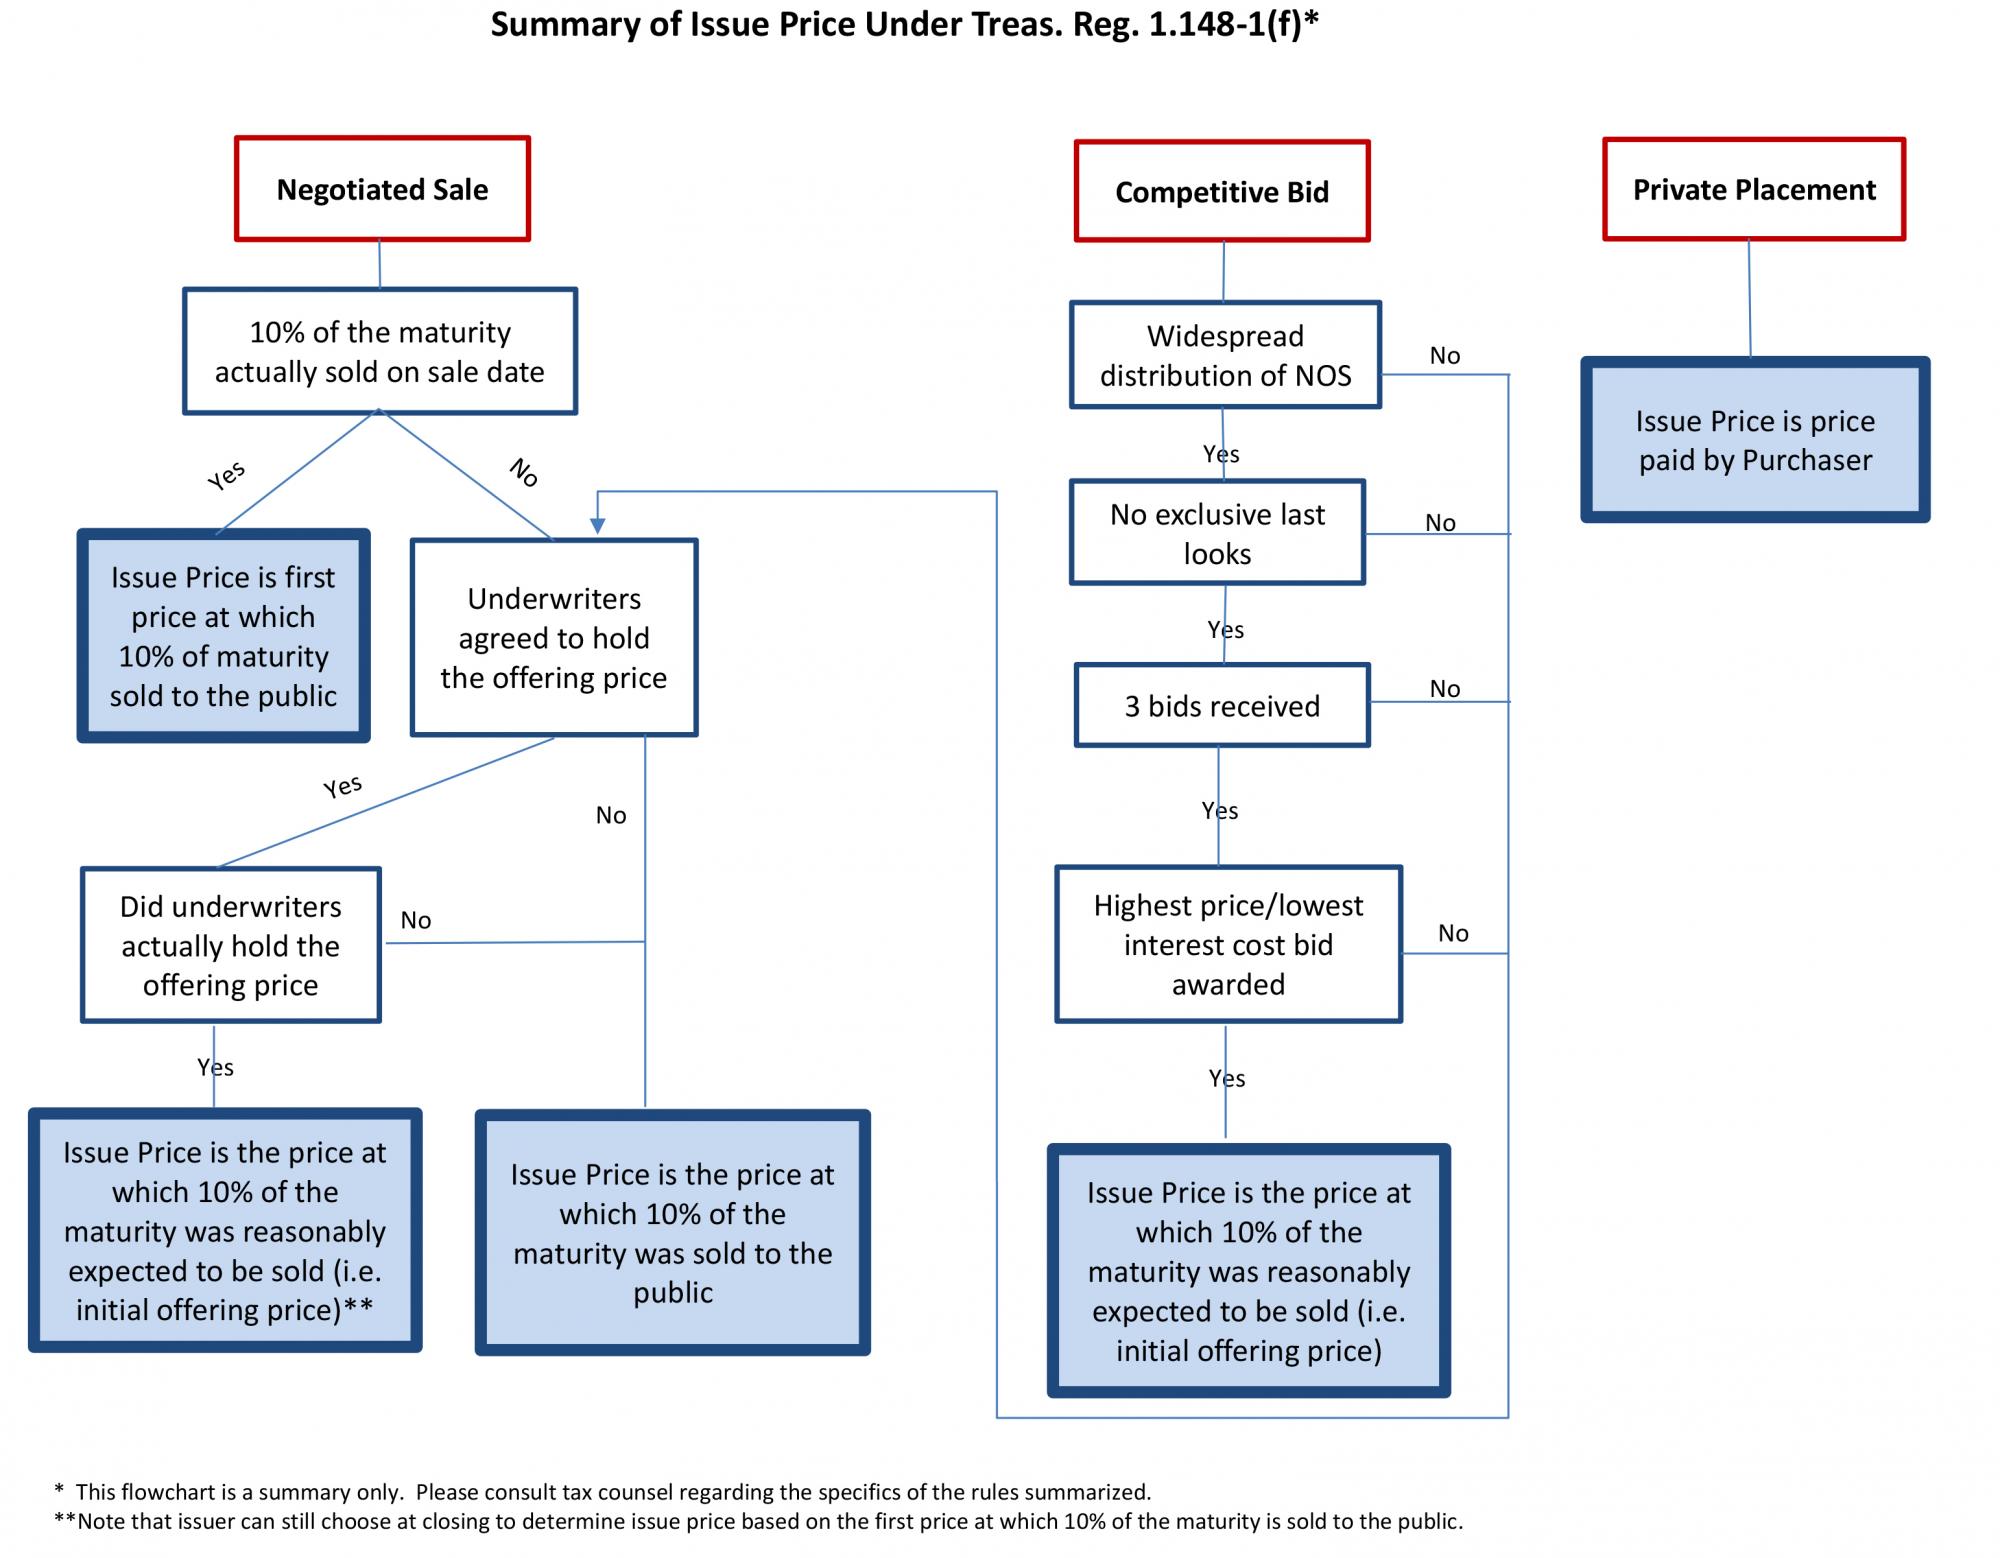 Image: Summary of Issue Price Under Treas. Reg. 1.148-1(f)